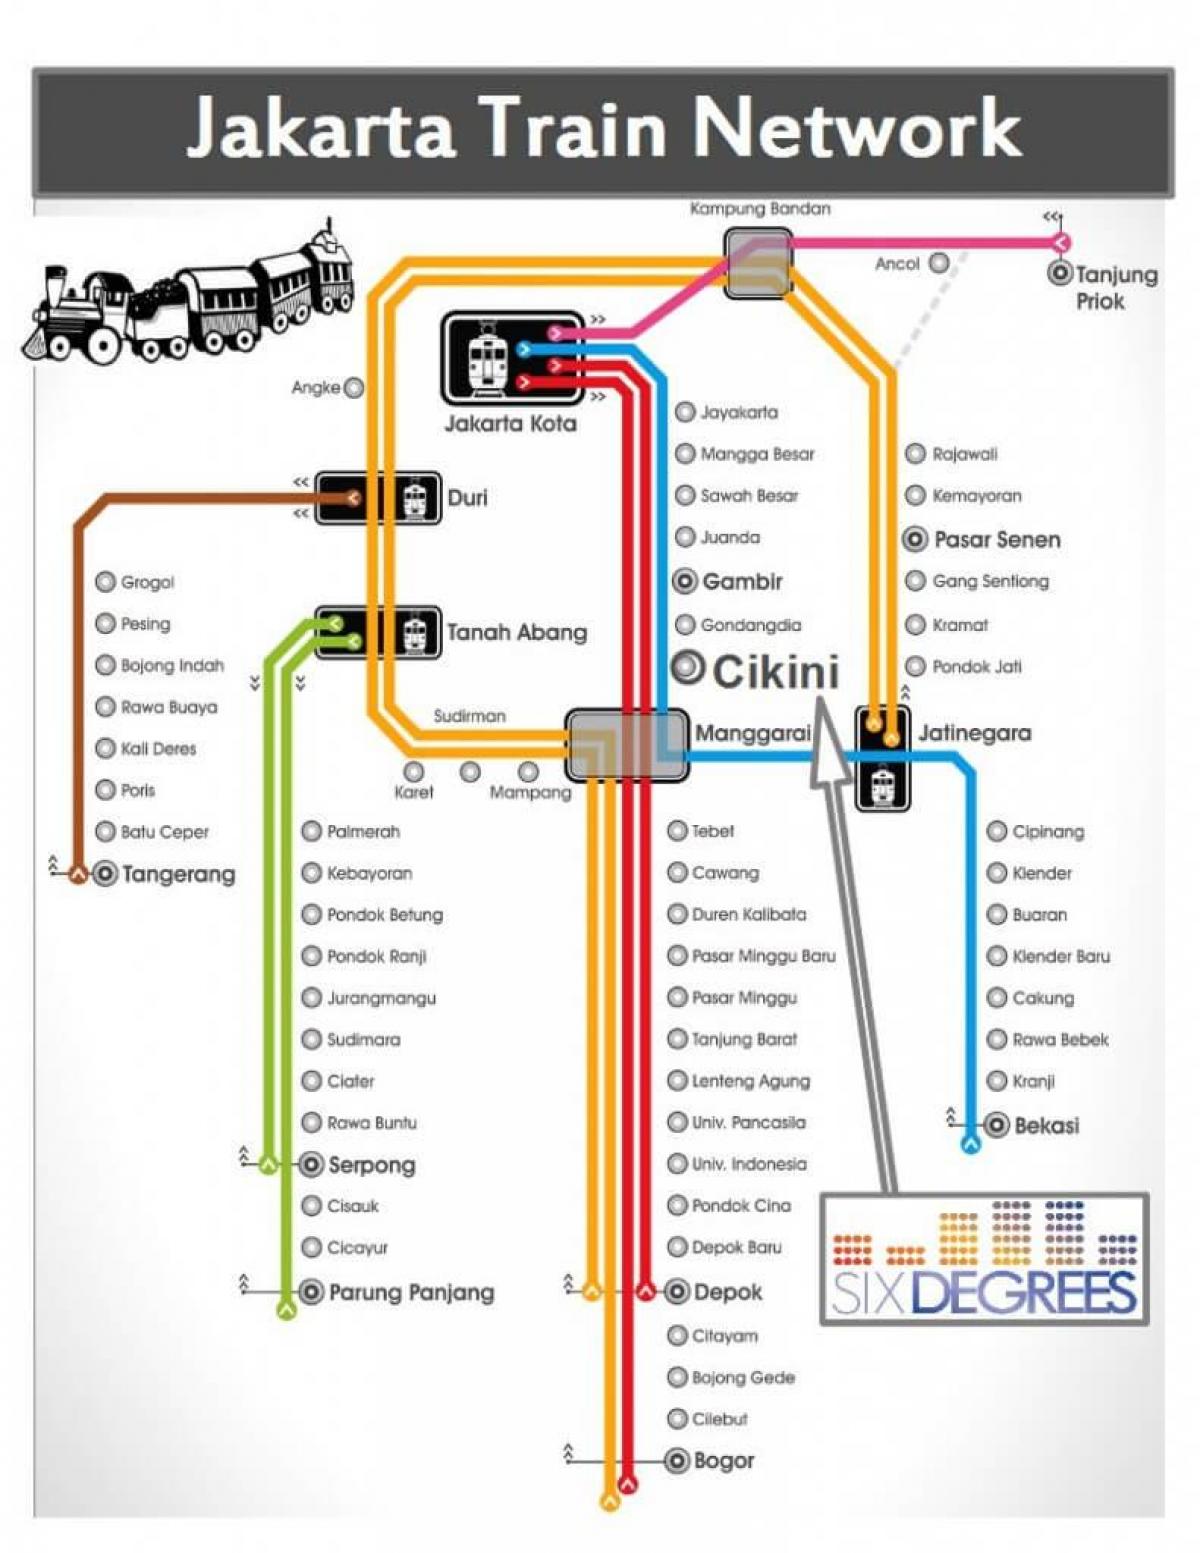 kat jeyografik nan Jakarta estasyon tren a